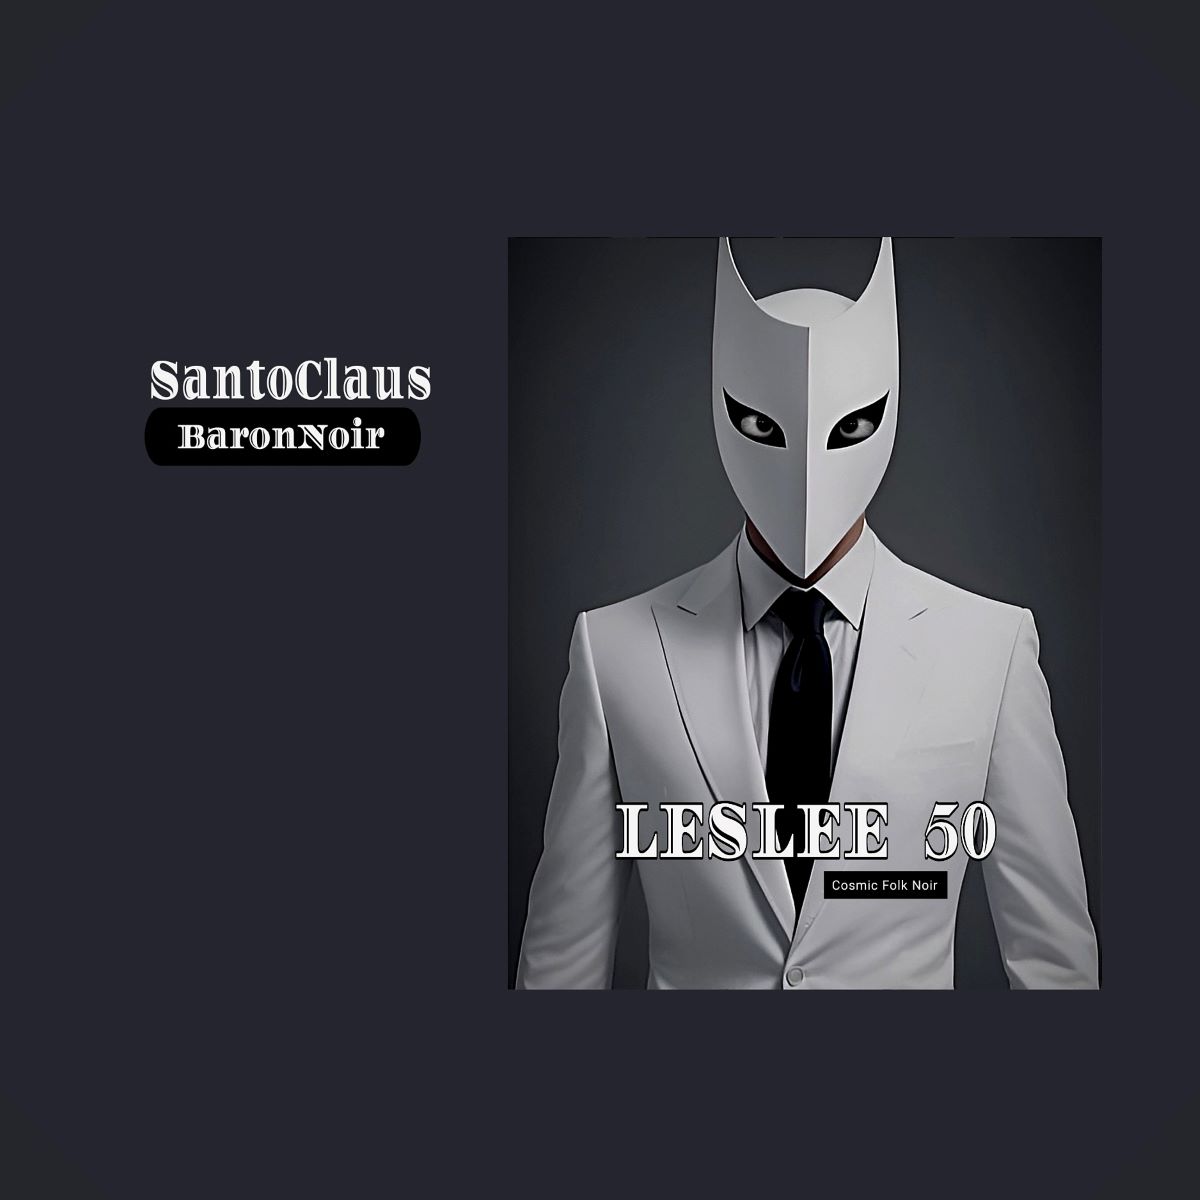 SantoClaus - Il nuovo e atteso singolo “Leslee 50”